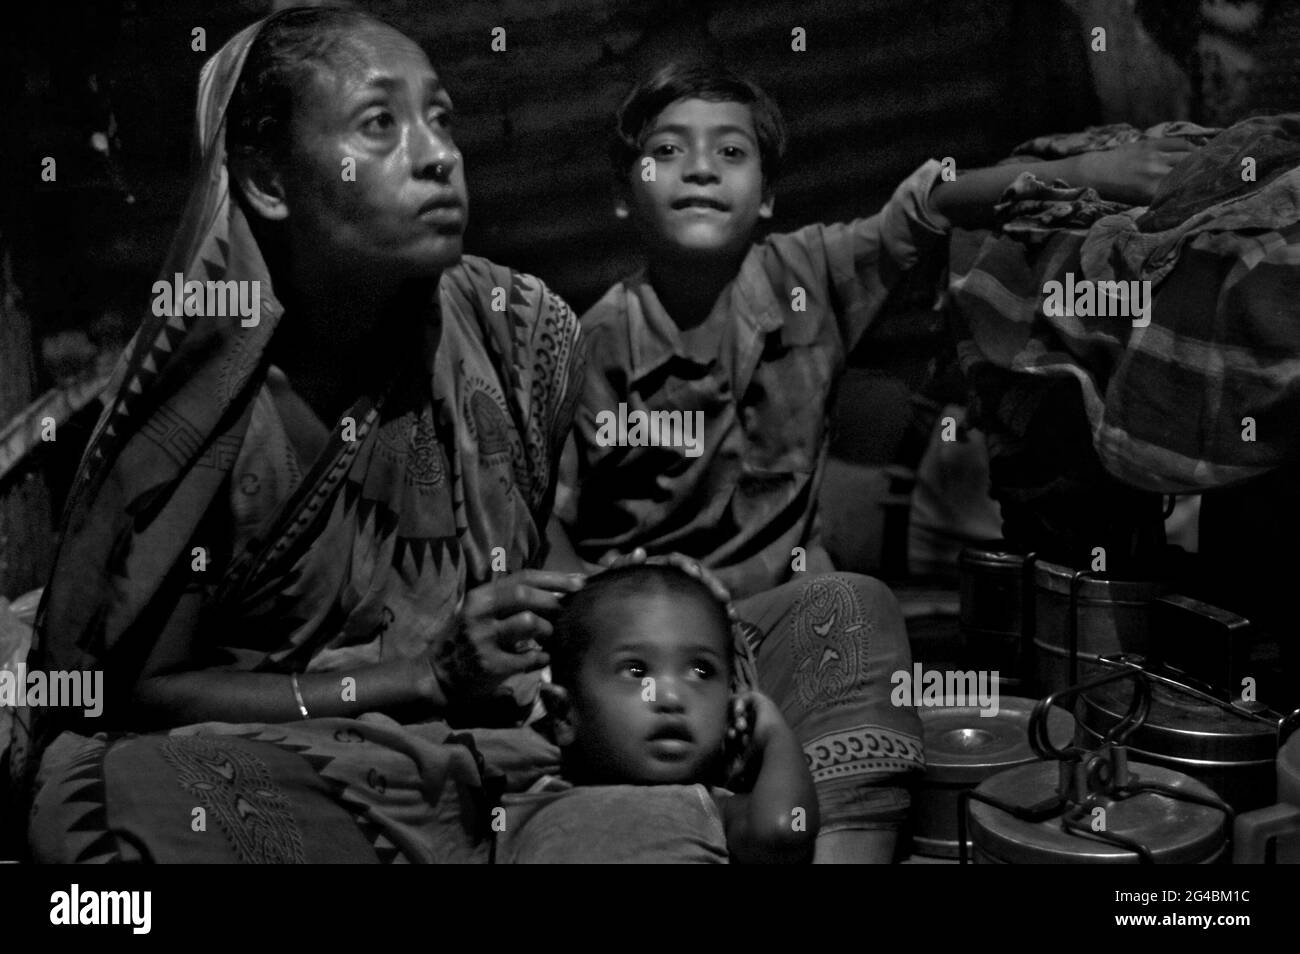 Rubel with his family: his mother and baby nephew at kathalbagan shanty. Dhaka, Bangladesh. May 2, 2007. Stock Photo